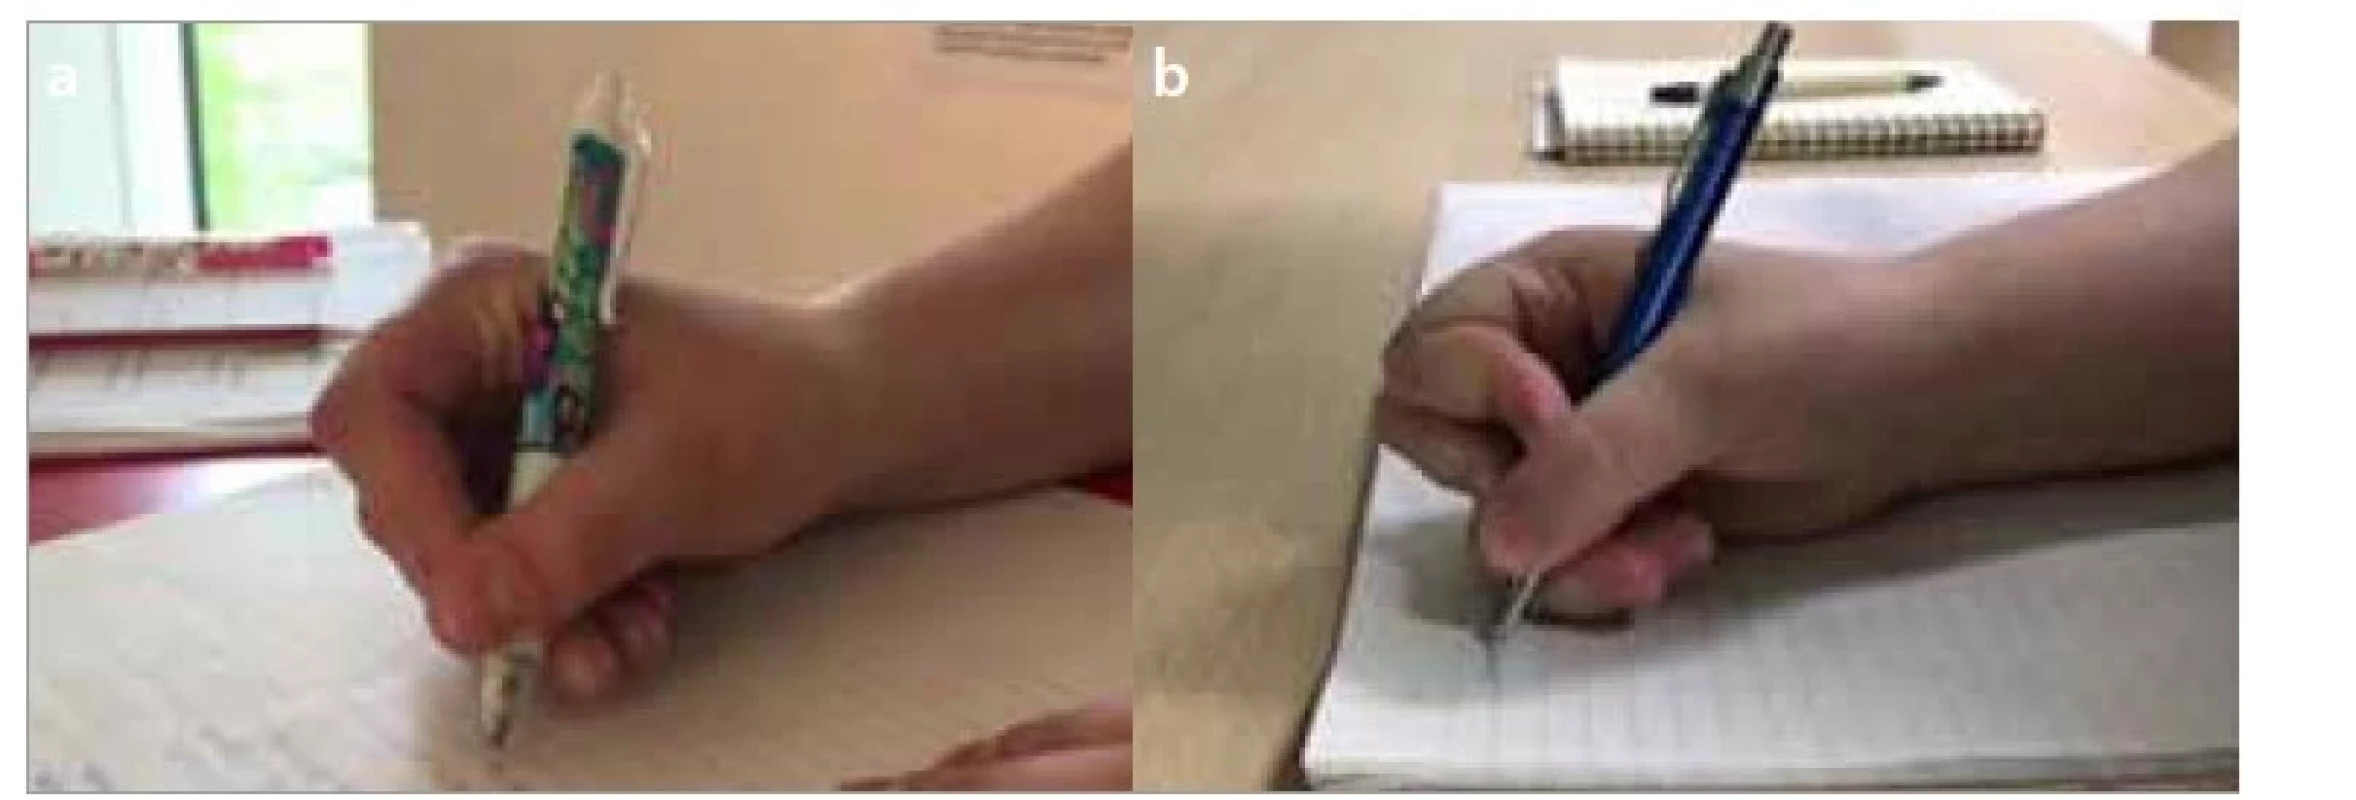 a,b. Boční palcový úchop – a) tříprstý, b) čtyřprstý.<br>
Fig. 4a,b. Lateral thumb grip – a) lateral tripod grip, b) lateral quadruped grip.